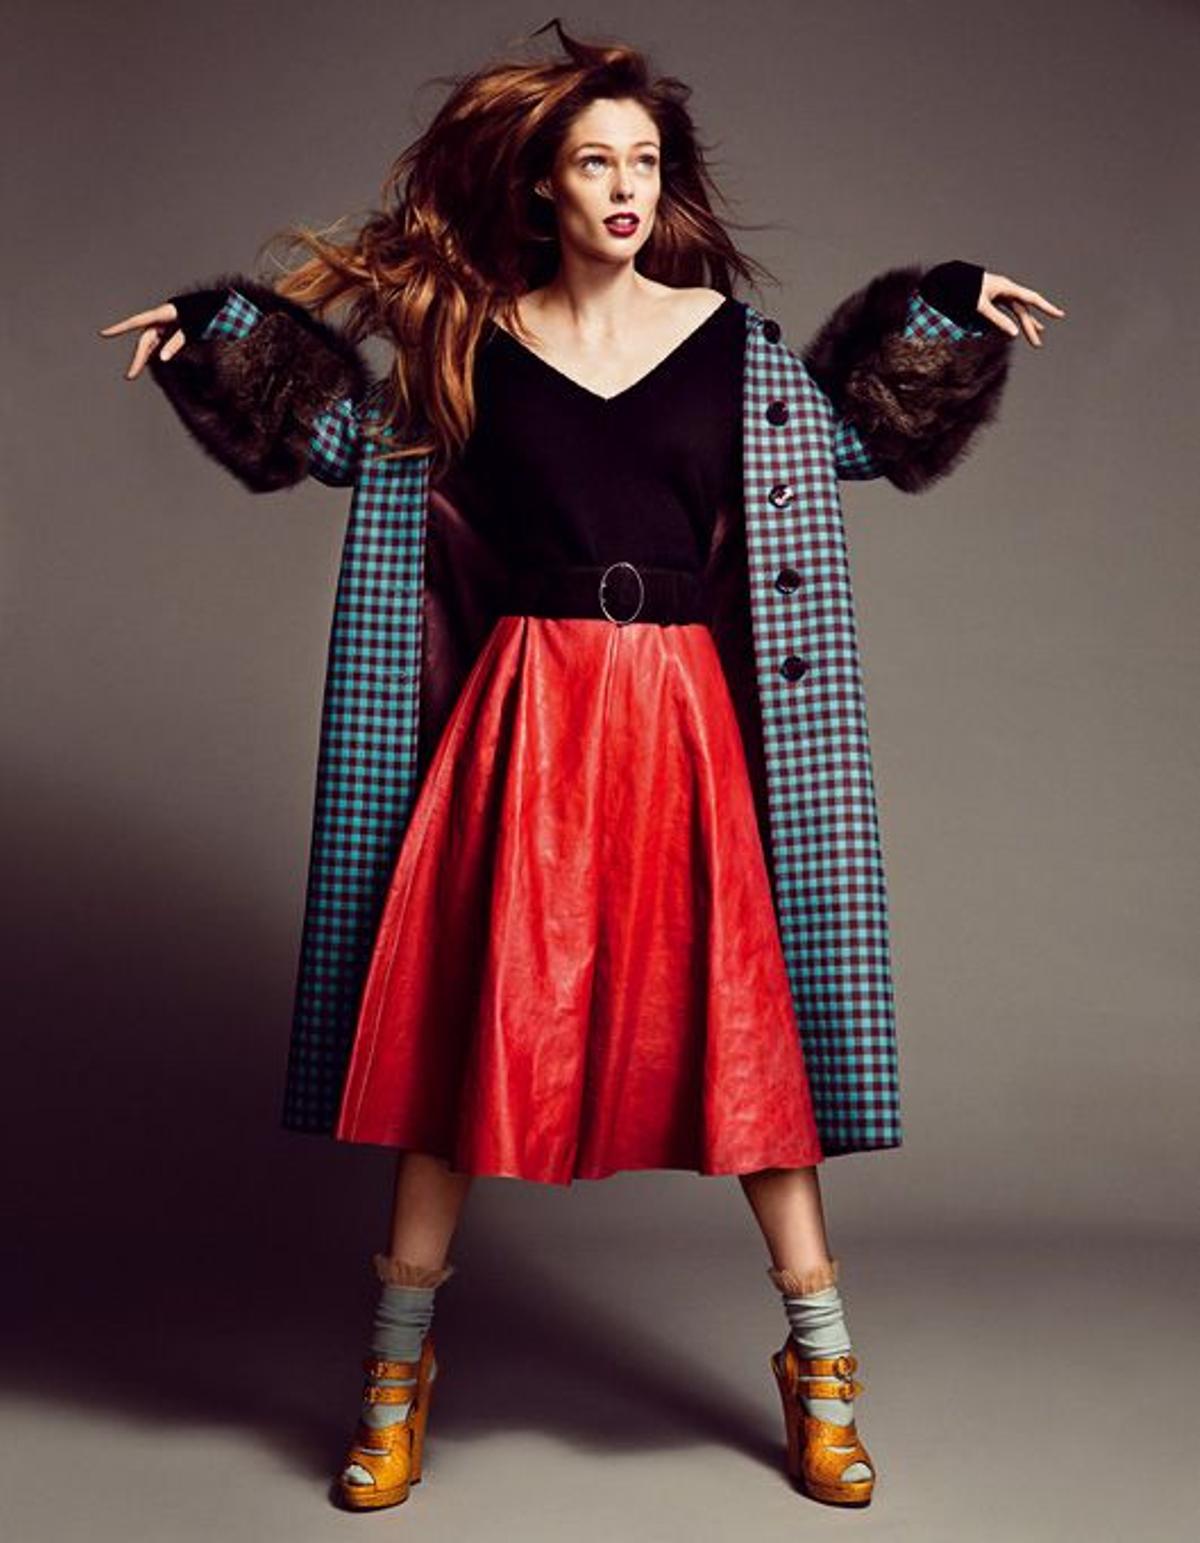 Coco Rocha, top model, tendencias, otoño, shopping, moda, abrigos, tweed, clásicos, trajes sastre